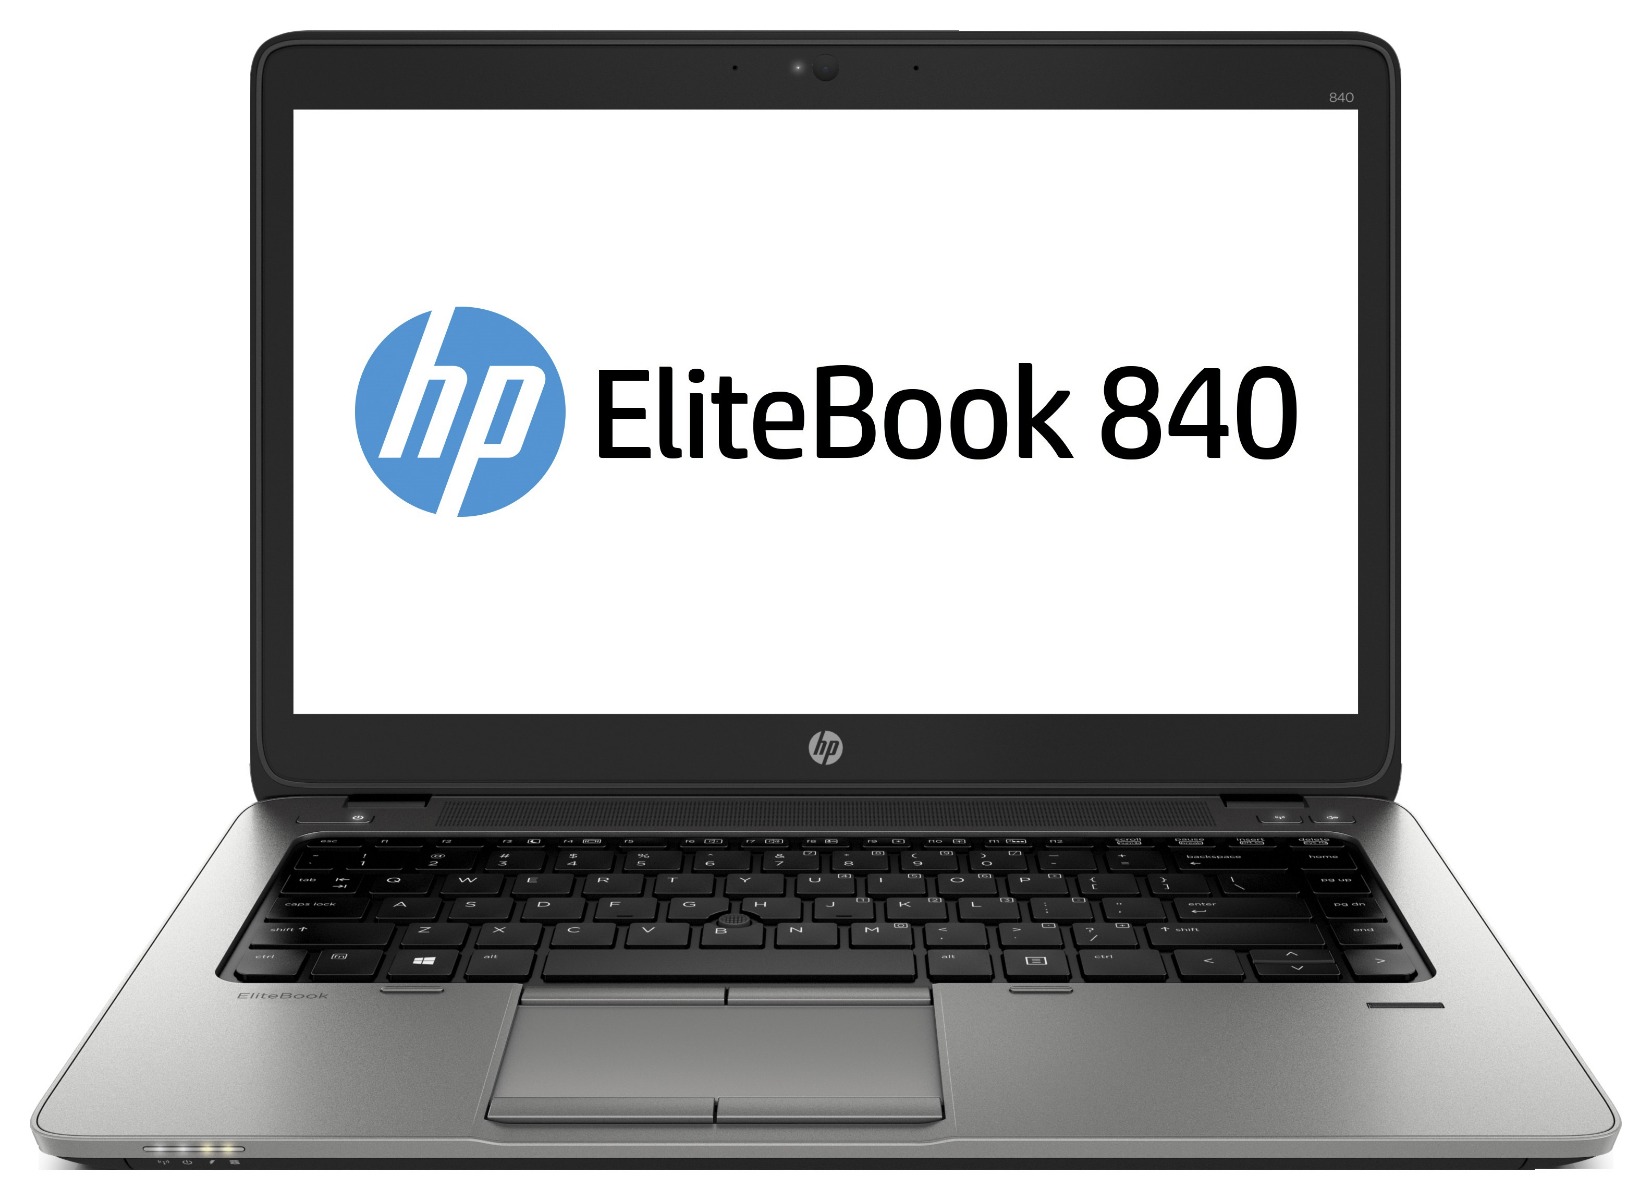 Refurbished laptop HP EliteBook 840 G3 met vele extra's